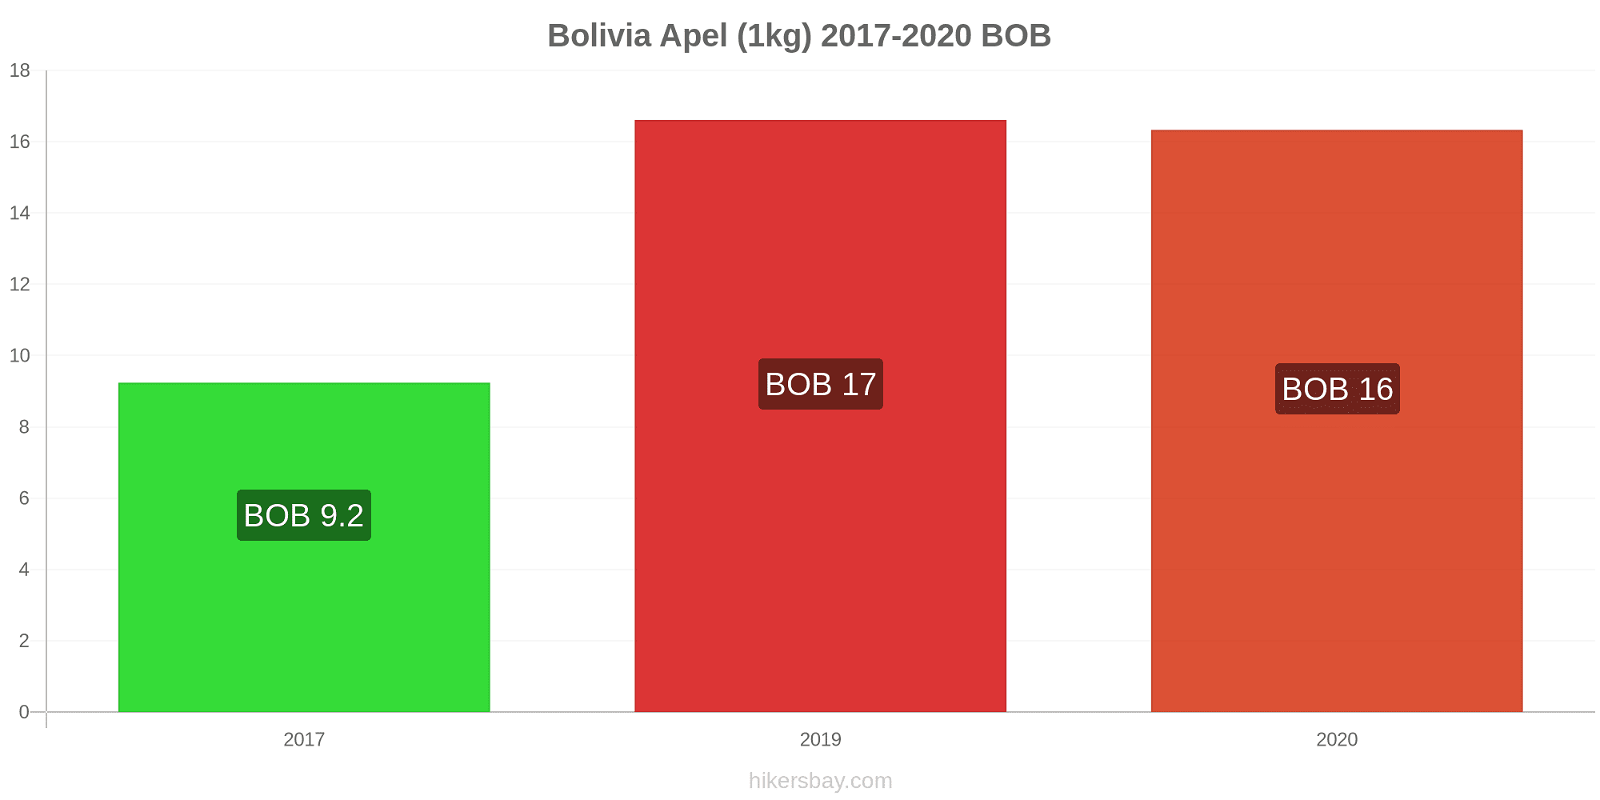 Bolivia perubahan harga Apel (1kg) hikersbay.com